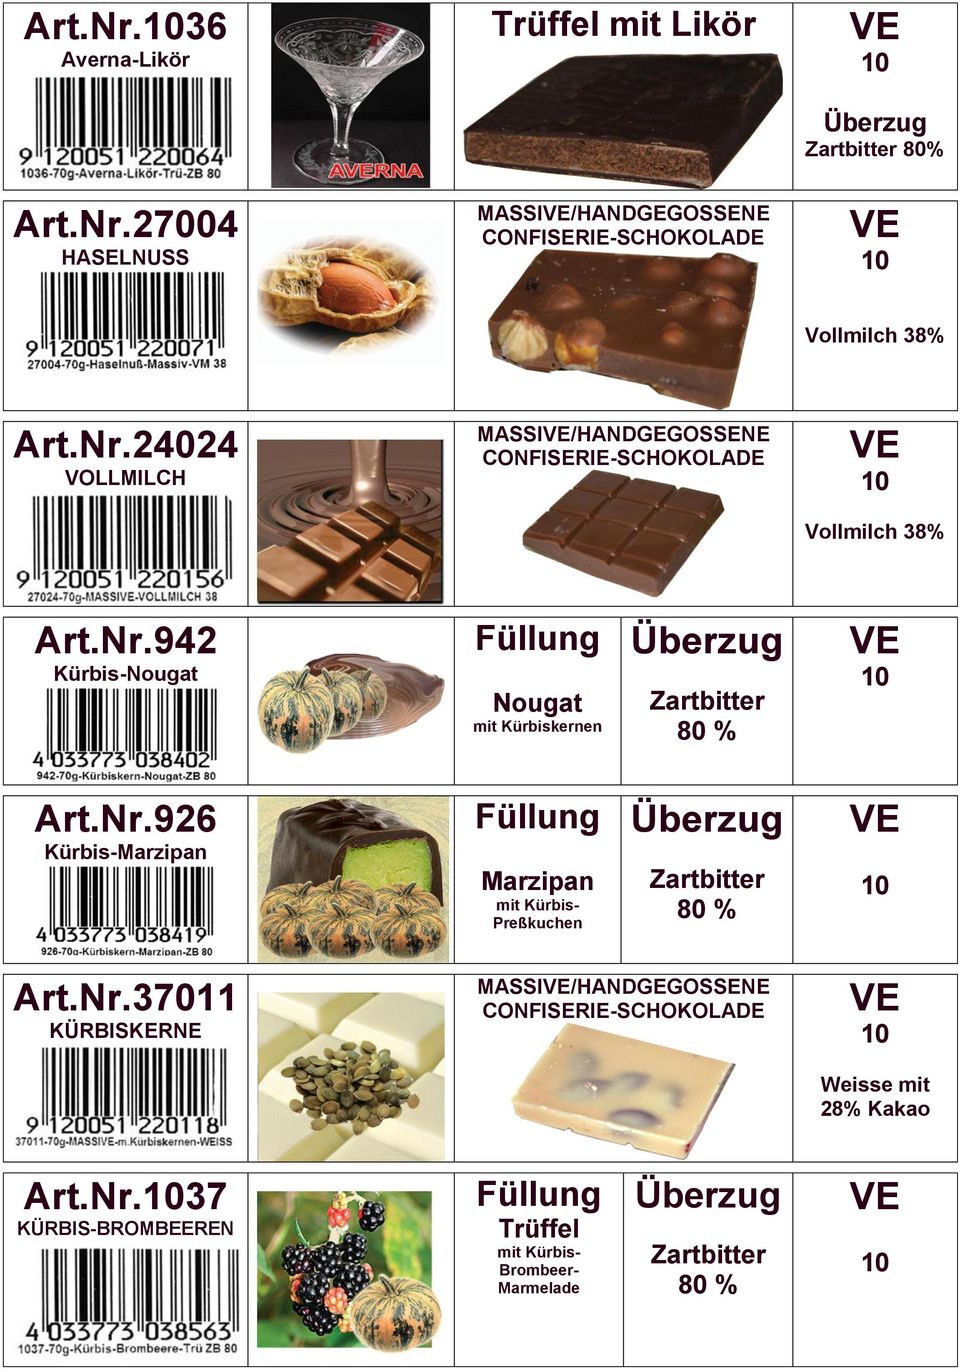 Nr.926 Kürbis-Marzipan Marzipan mit Kürbis- Preßkuchen Art.Nr.37011 KÜRBISKERNE MASSI/HANDGEGOSSENE CONFISERIE-SCHOKOLADE Weisse mit 28% Kakao Art.